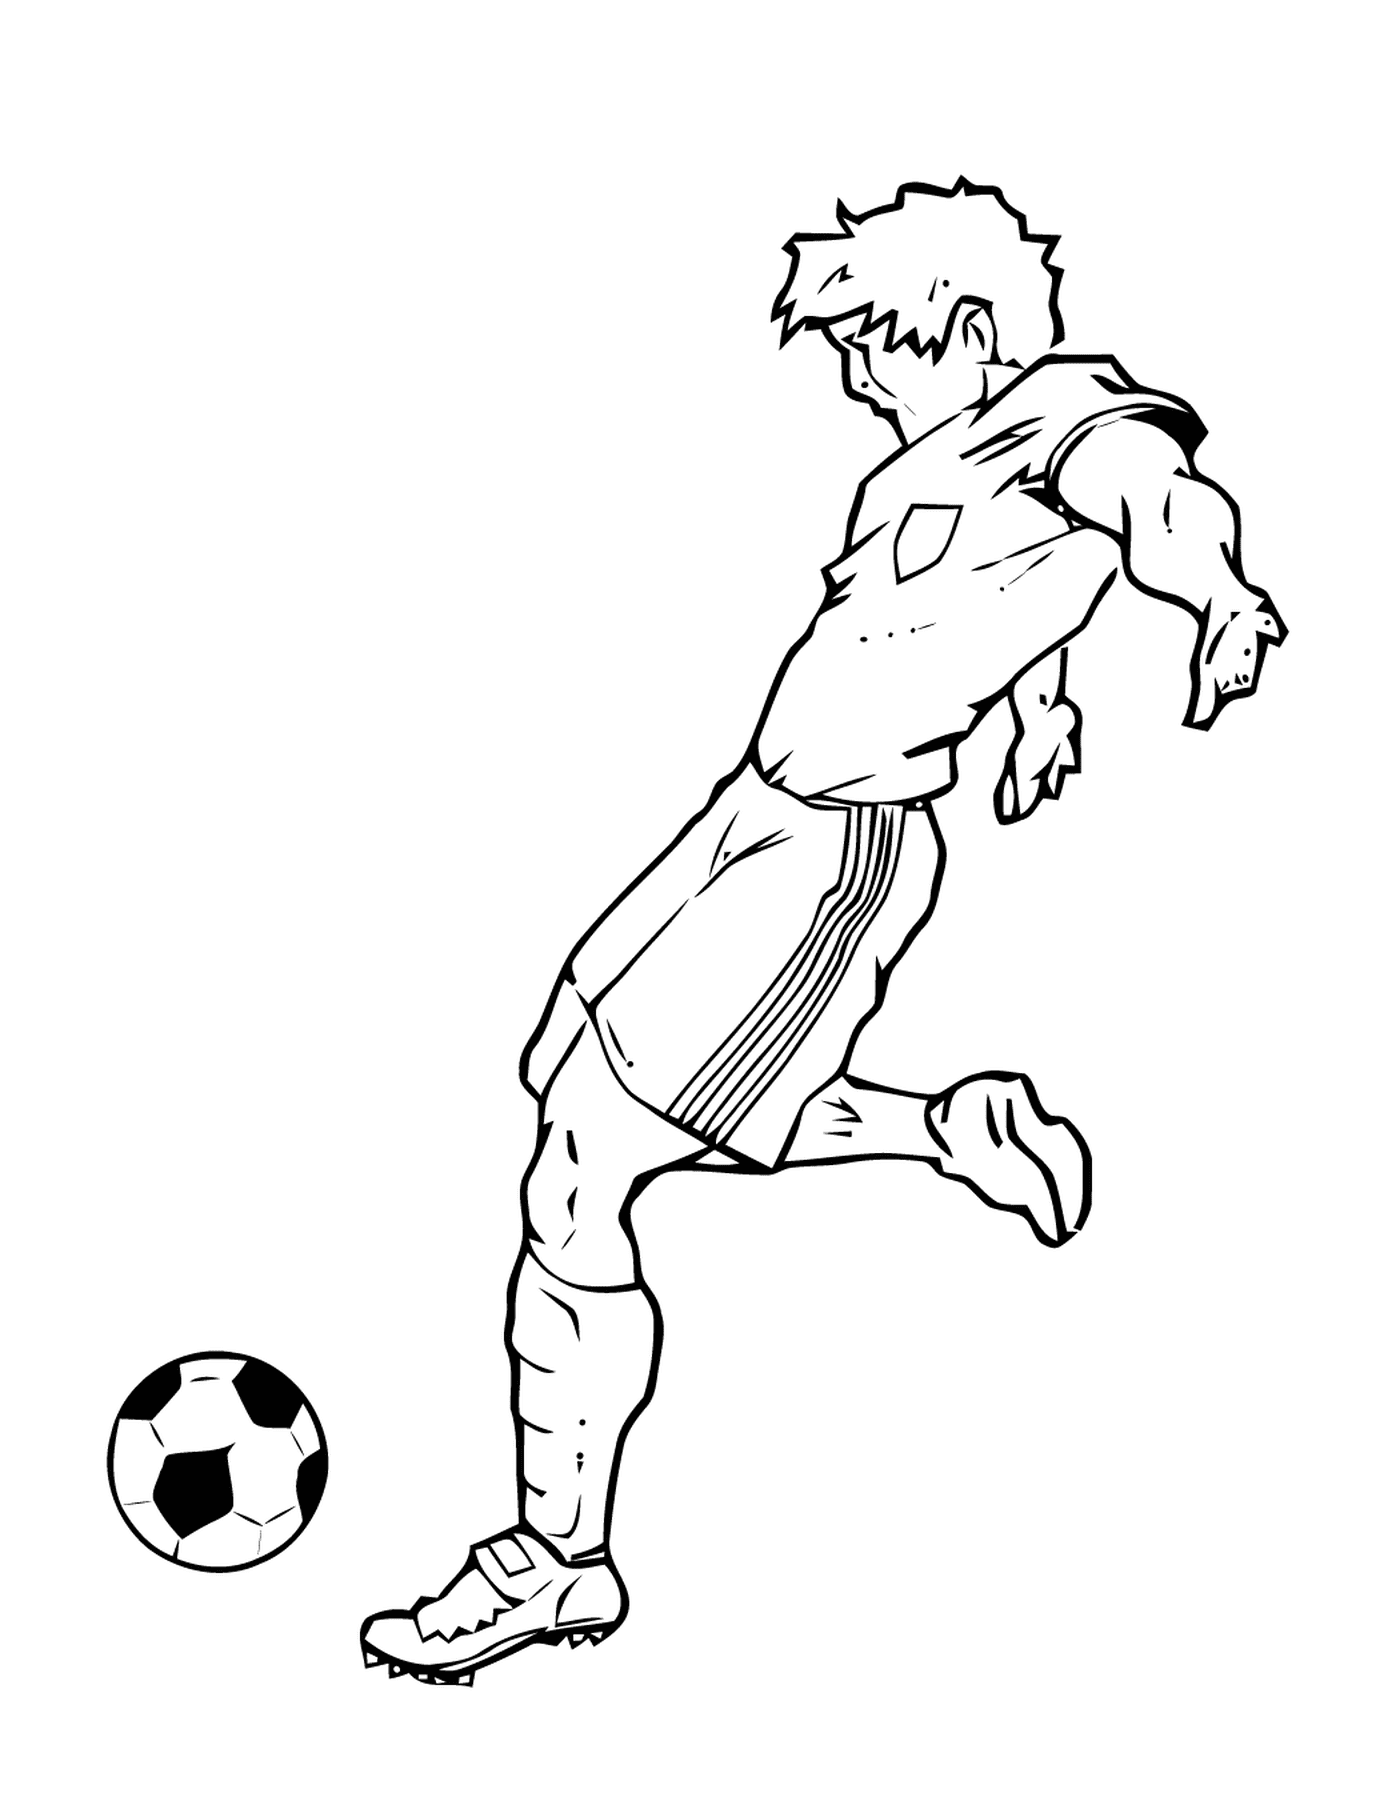  Deporte, jugador de fútbol golpeando una pelota 